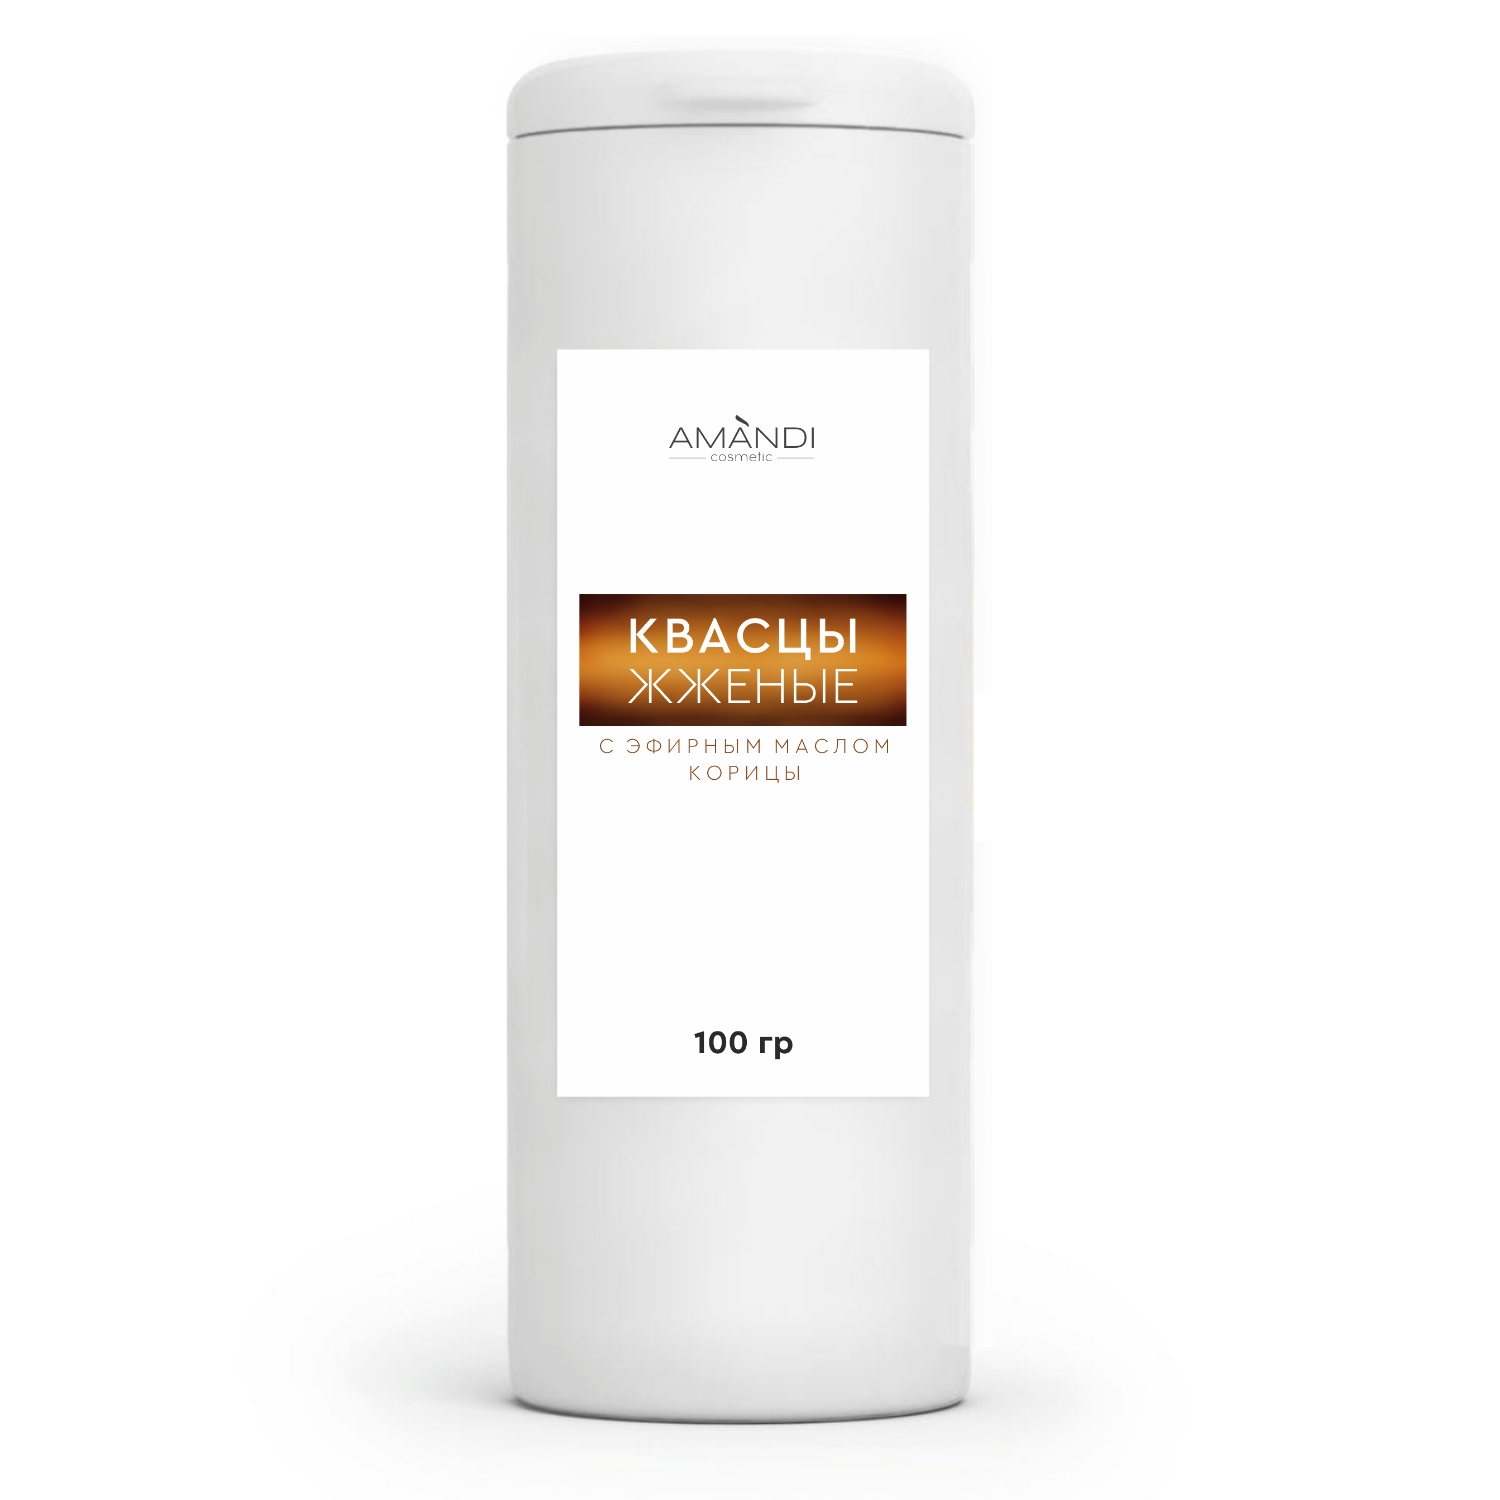 Сухой дезодорант квасцы жженые AMANDI с эфирным маслом корицы 100 грамм - фото 1